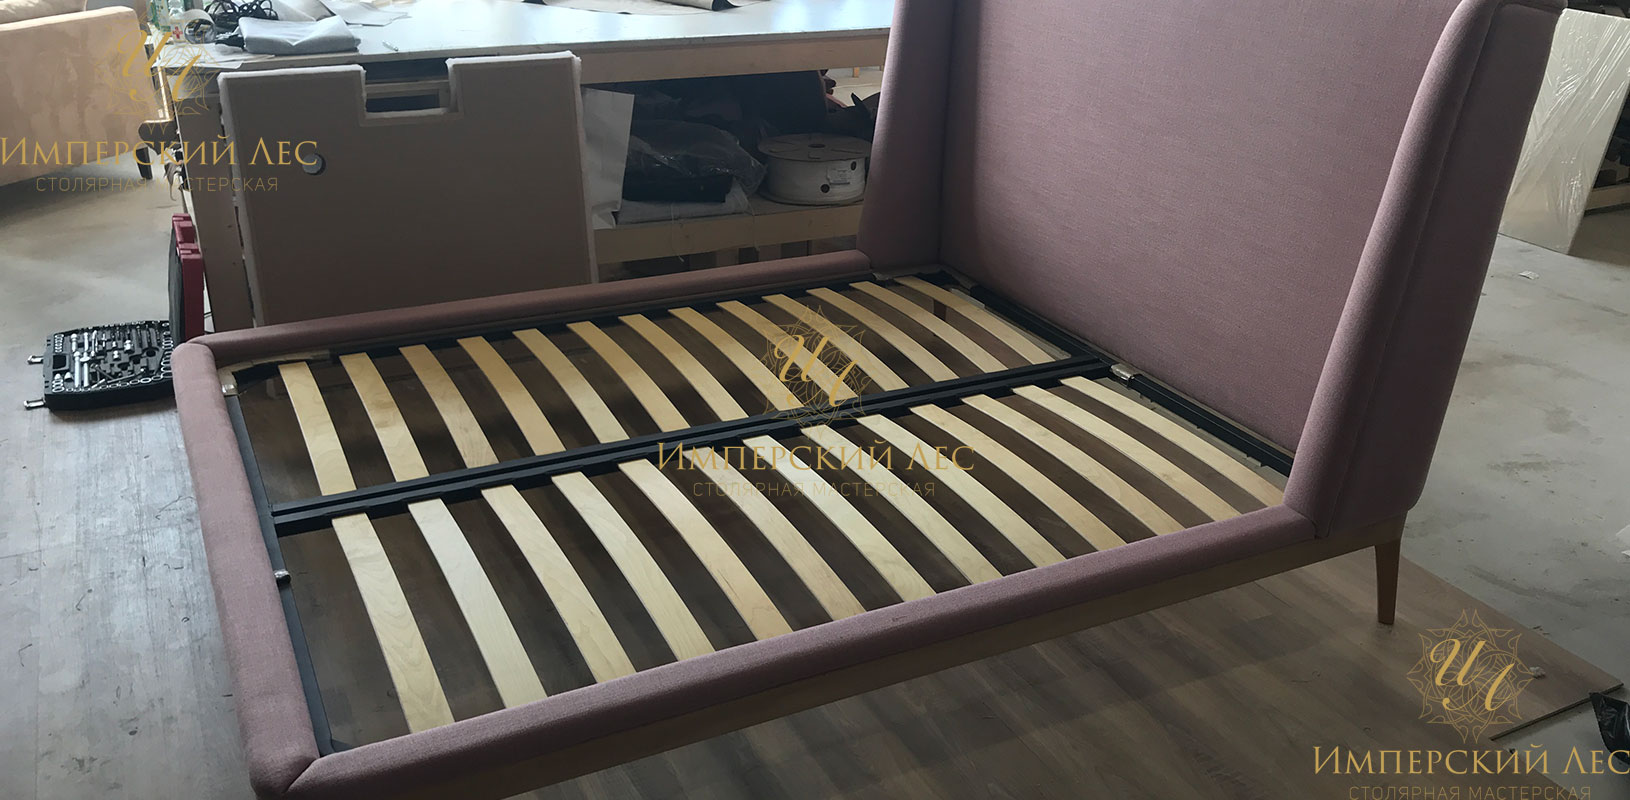 Кровать "Глория" из натурального дерева с обивкой фиолетового цвета